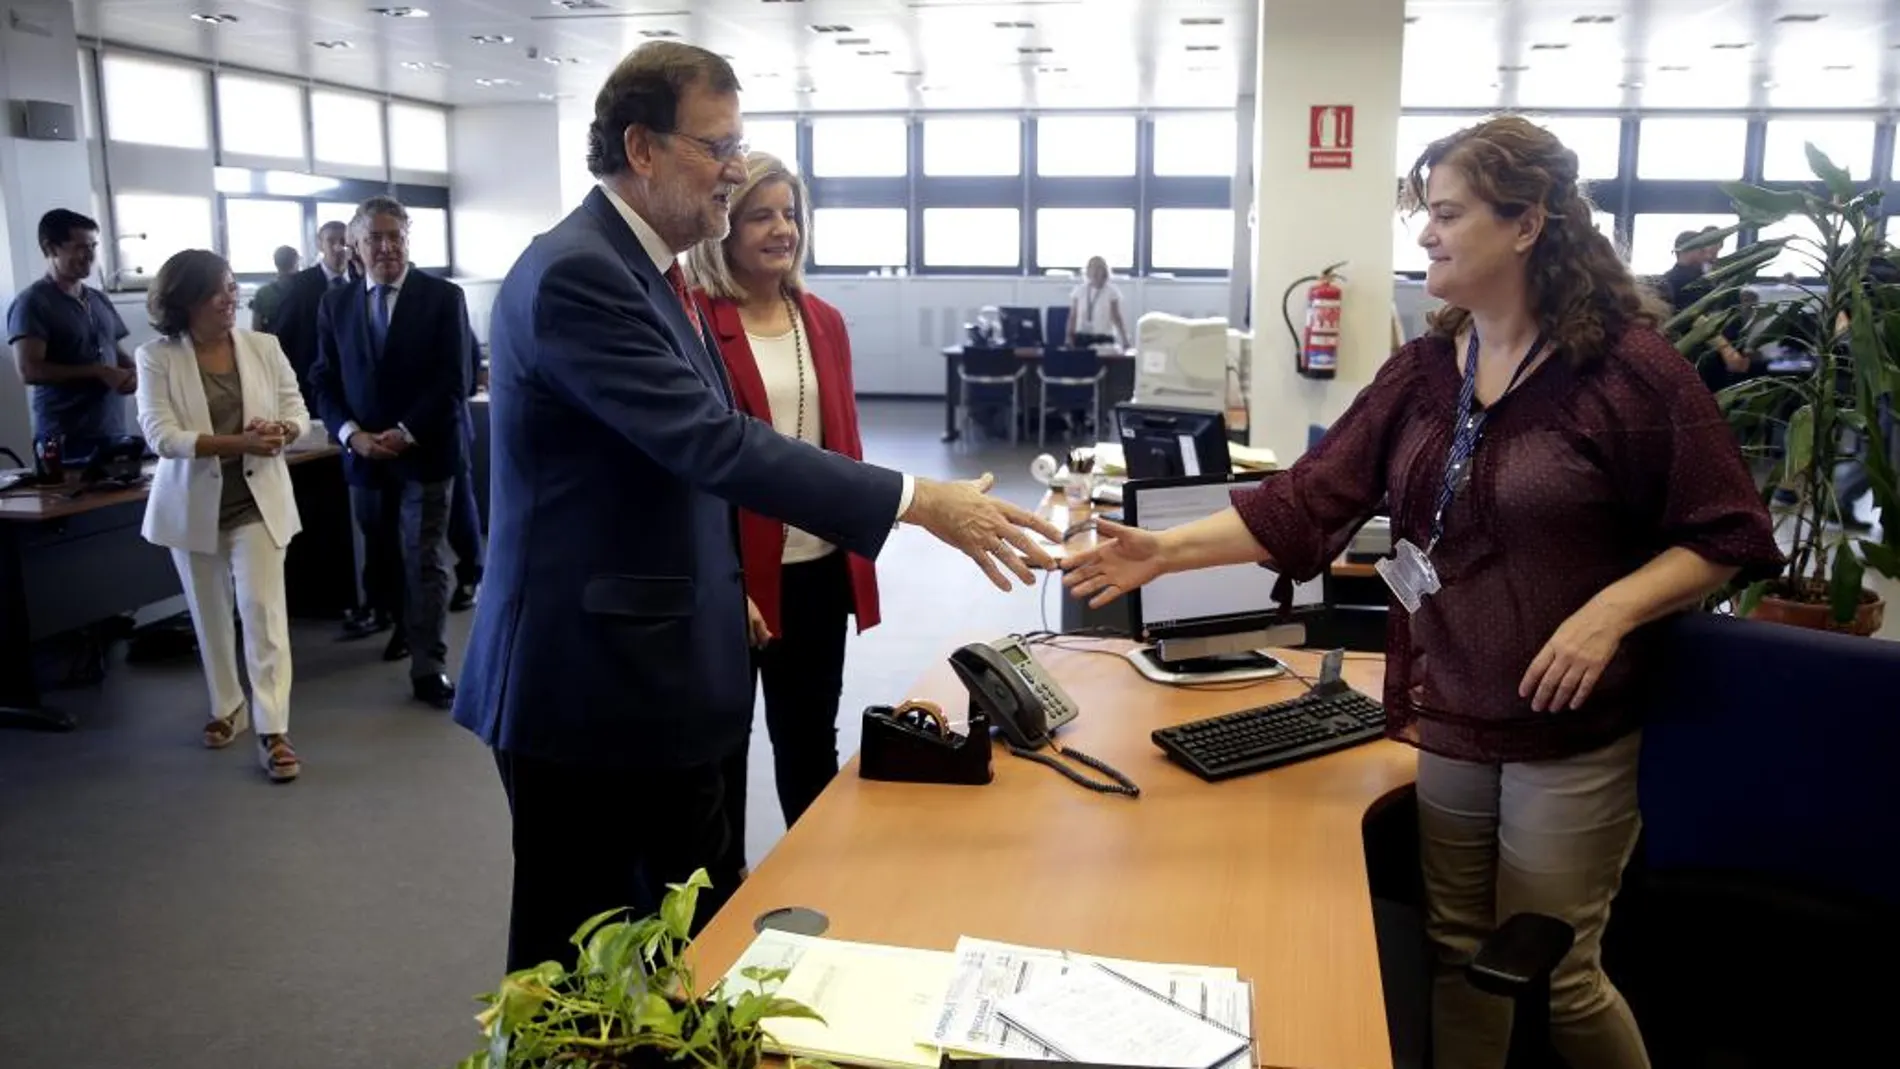 El presidente del Gobierno en funciones, Mariano Rajoy, acompañado por la ministra de Empleo, Fátima Báñez, entre otros, saluda a una trabajadora de la Seguridad Social.